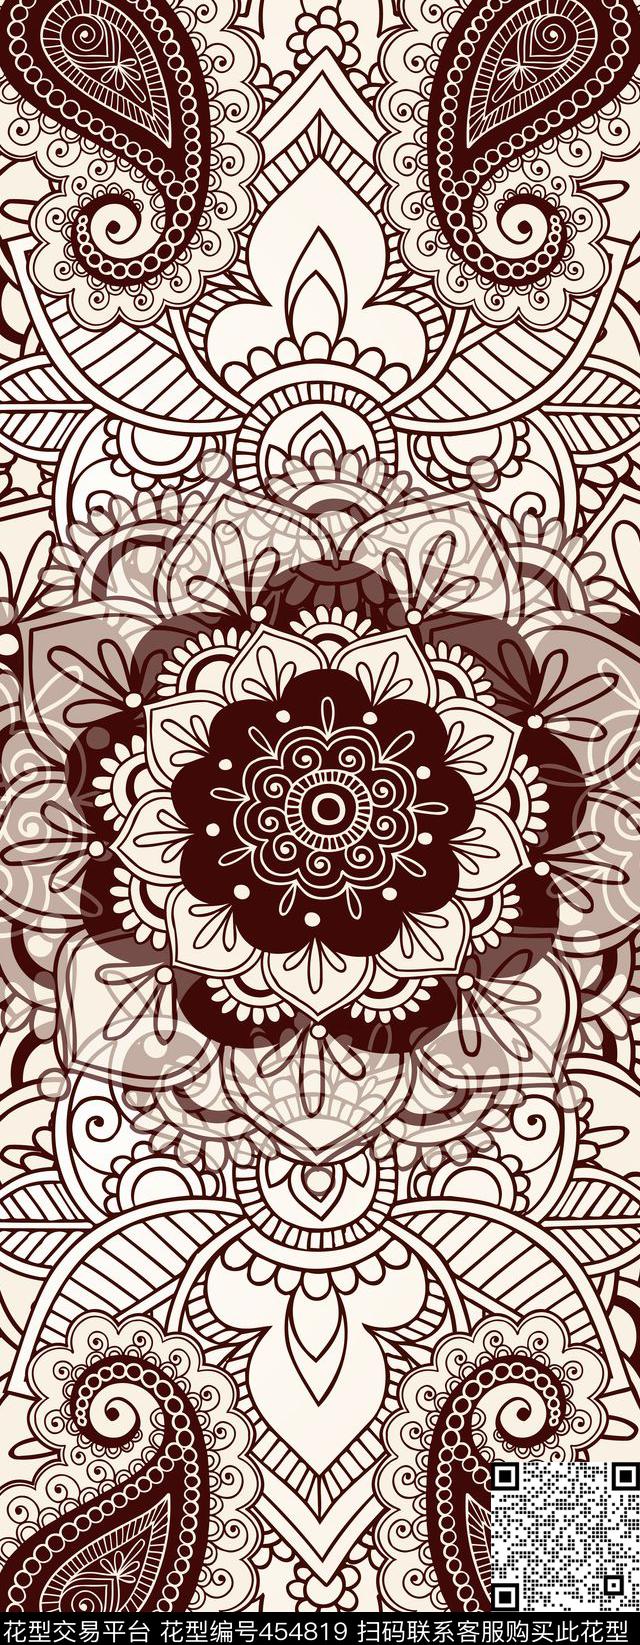 复古 佩斯利 长巾 欧式花纹 二方连续 - 454819 - 复古 欧式花纹 佩斯利 - 传统印花花型 － 长巾花型设计 － 瓦栏